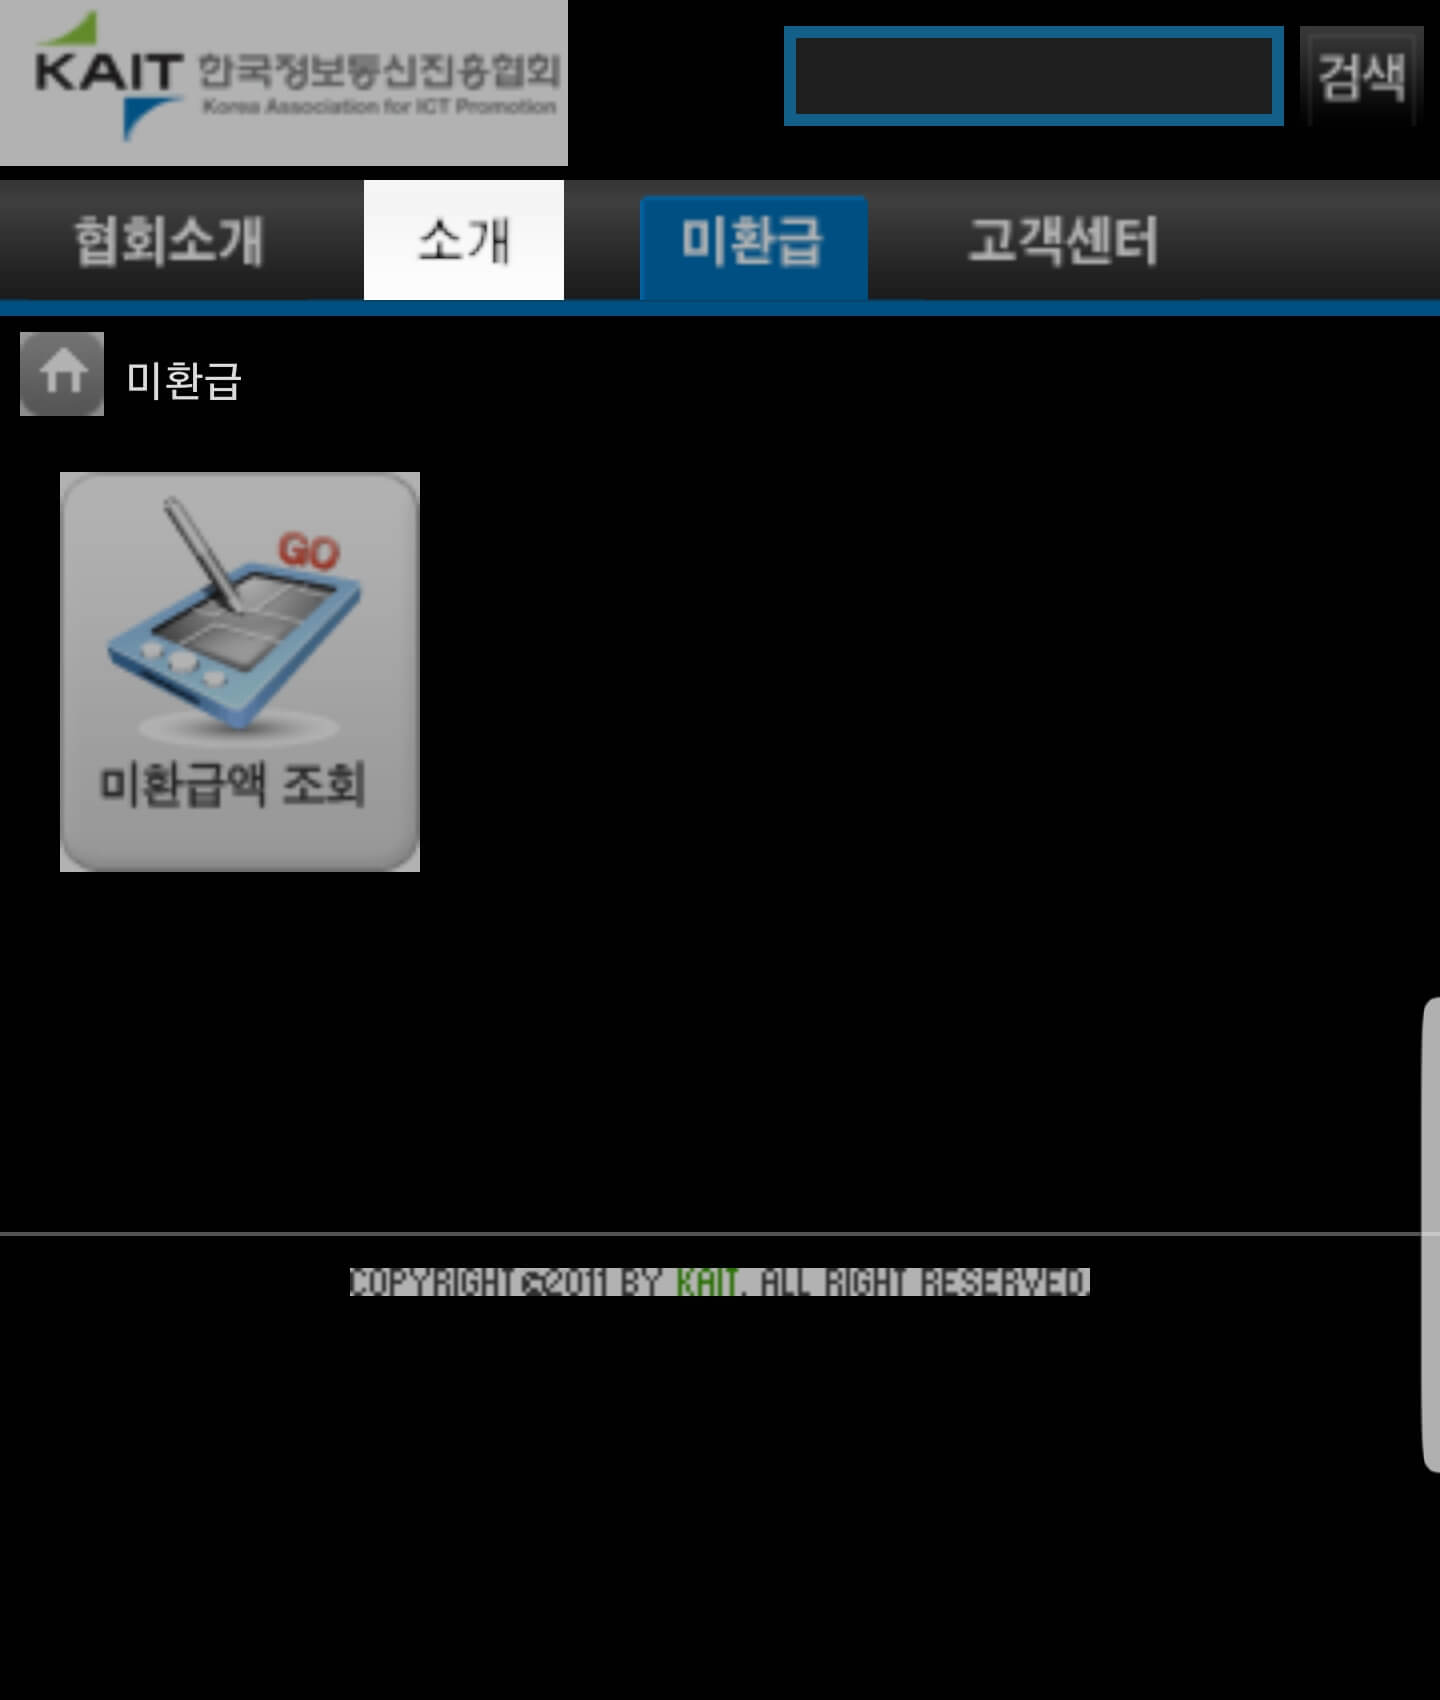 KAIT 유료방송미환급액 정보조회서비스 스마트폰 버전